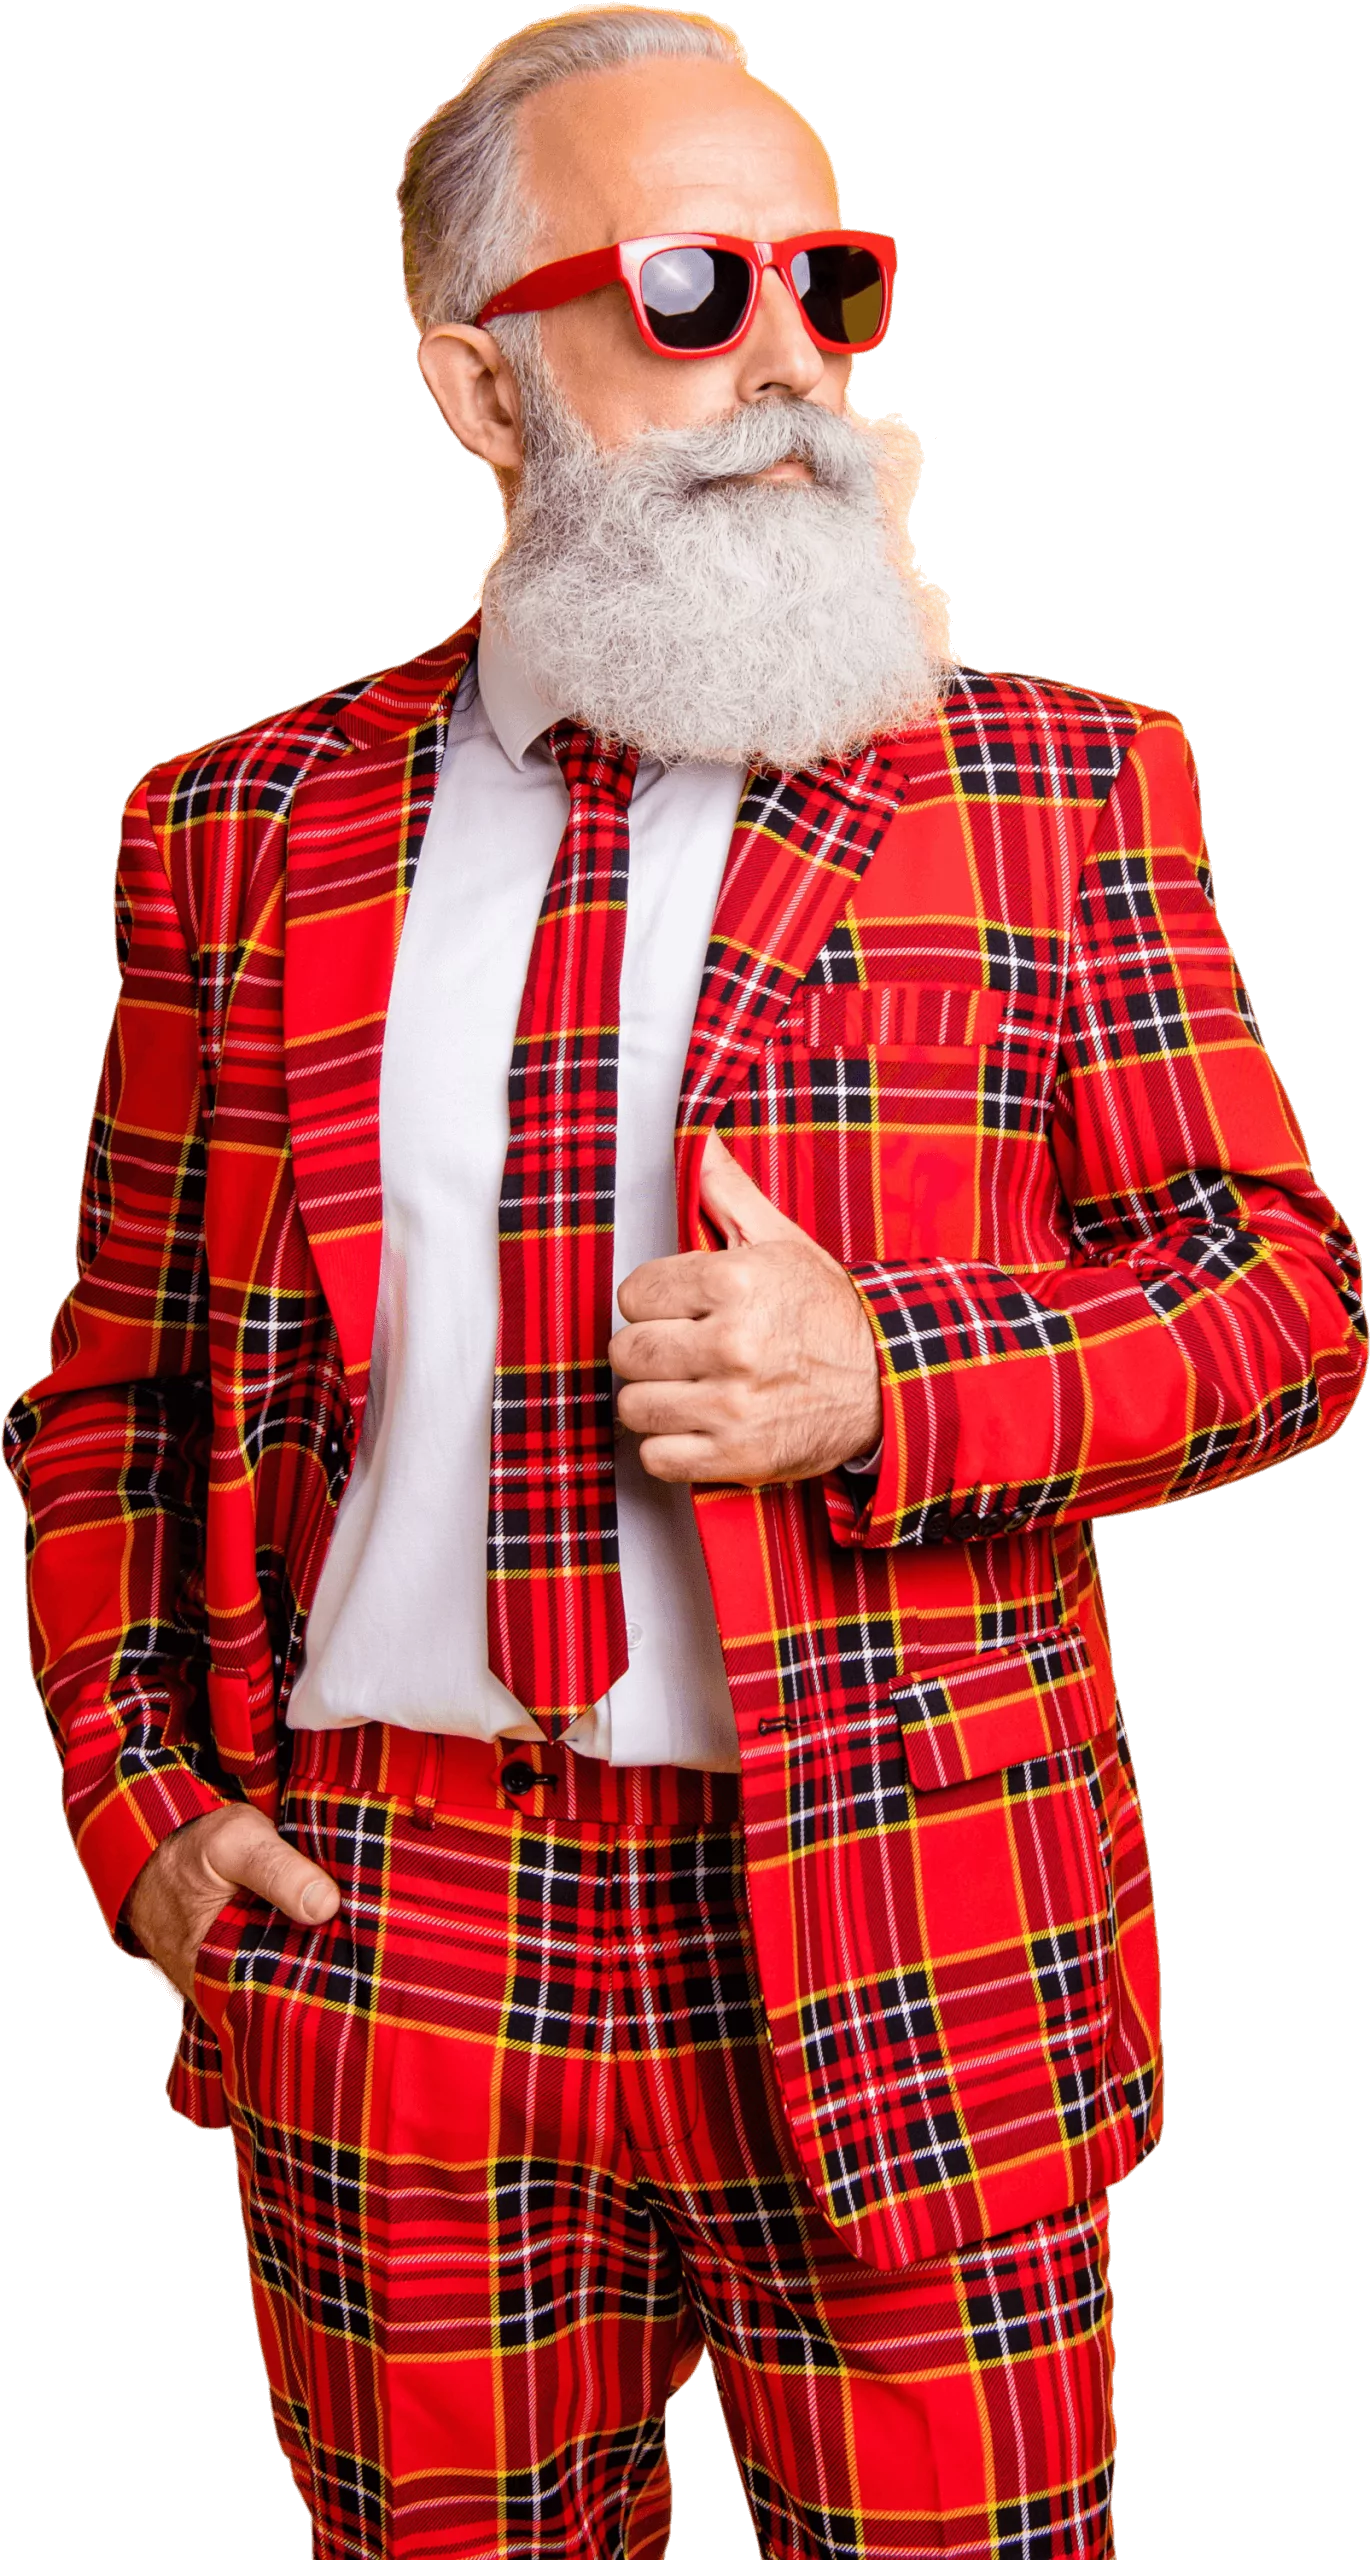 Zu sehen ist ein cooler älterer Herr in einem rot-kariertem Anzug der lässig posiert 